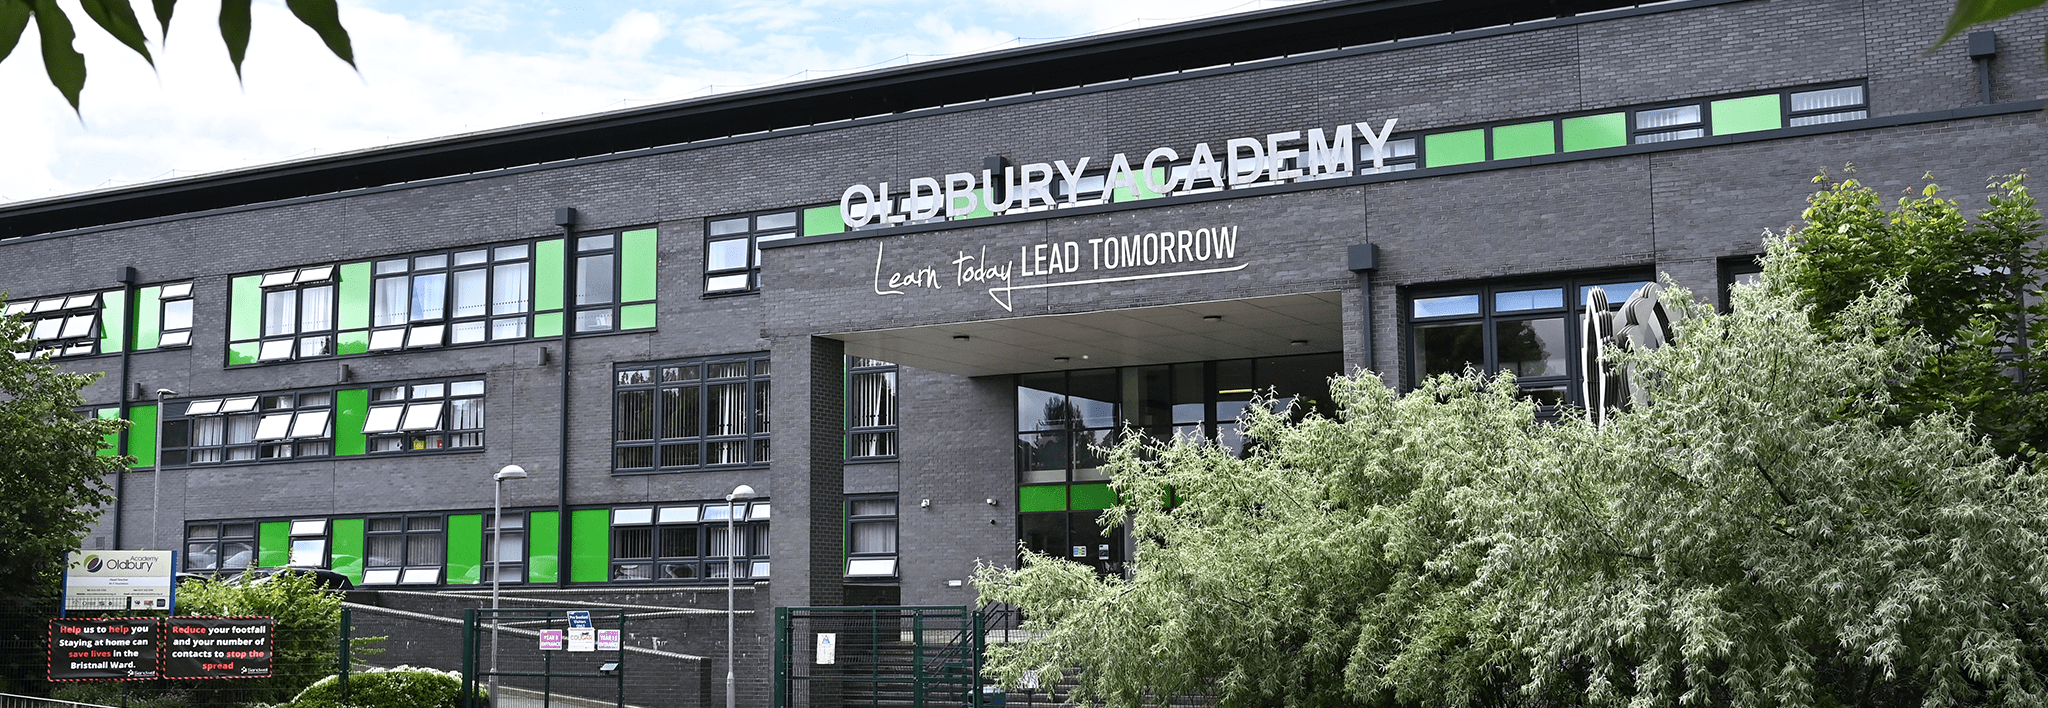 Oldbury Academy School Building